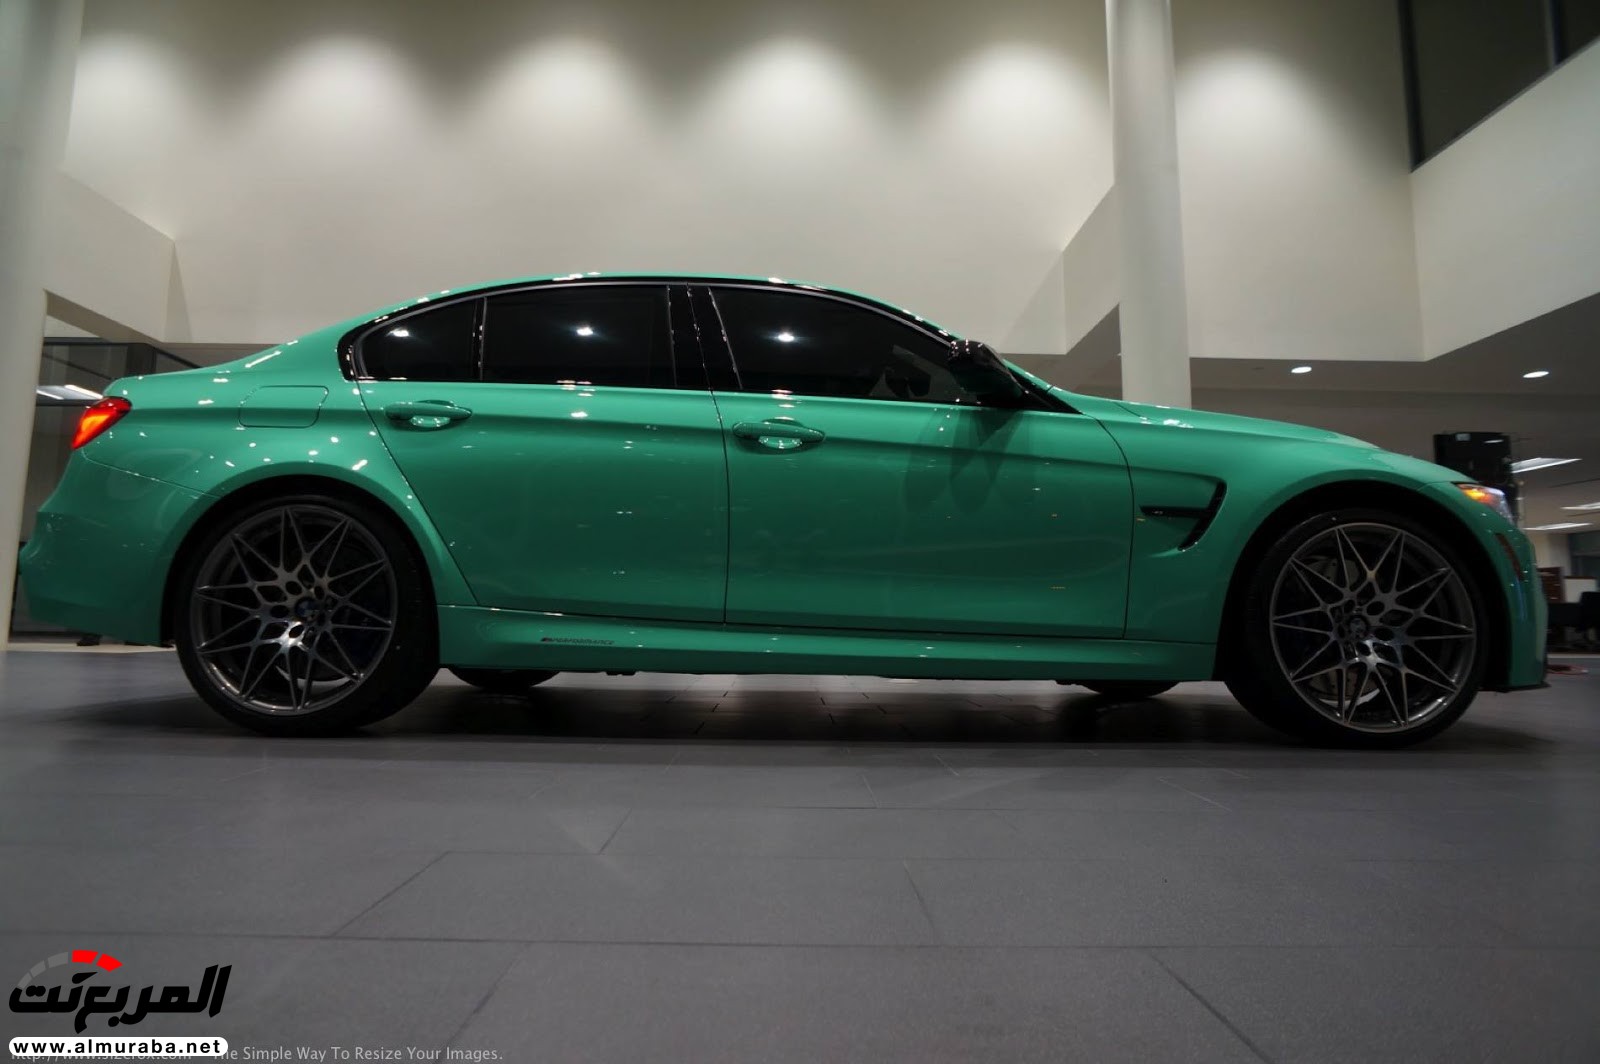 "بالصور" شاهد "بي إم دبليو" F80 M3 الخاصة بطلاء النعناع الأخضر BMW 106